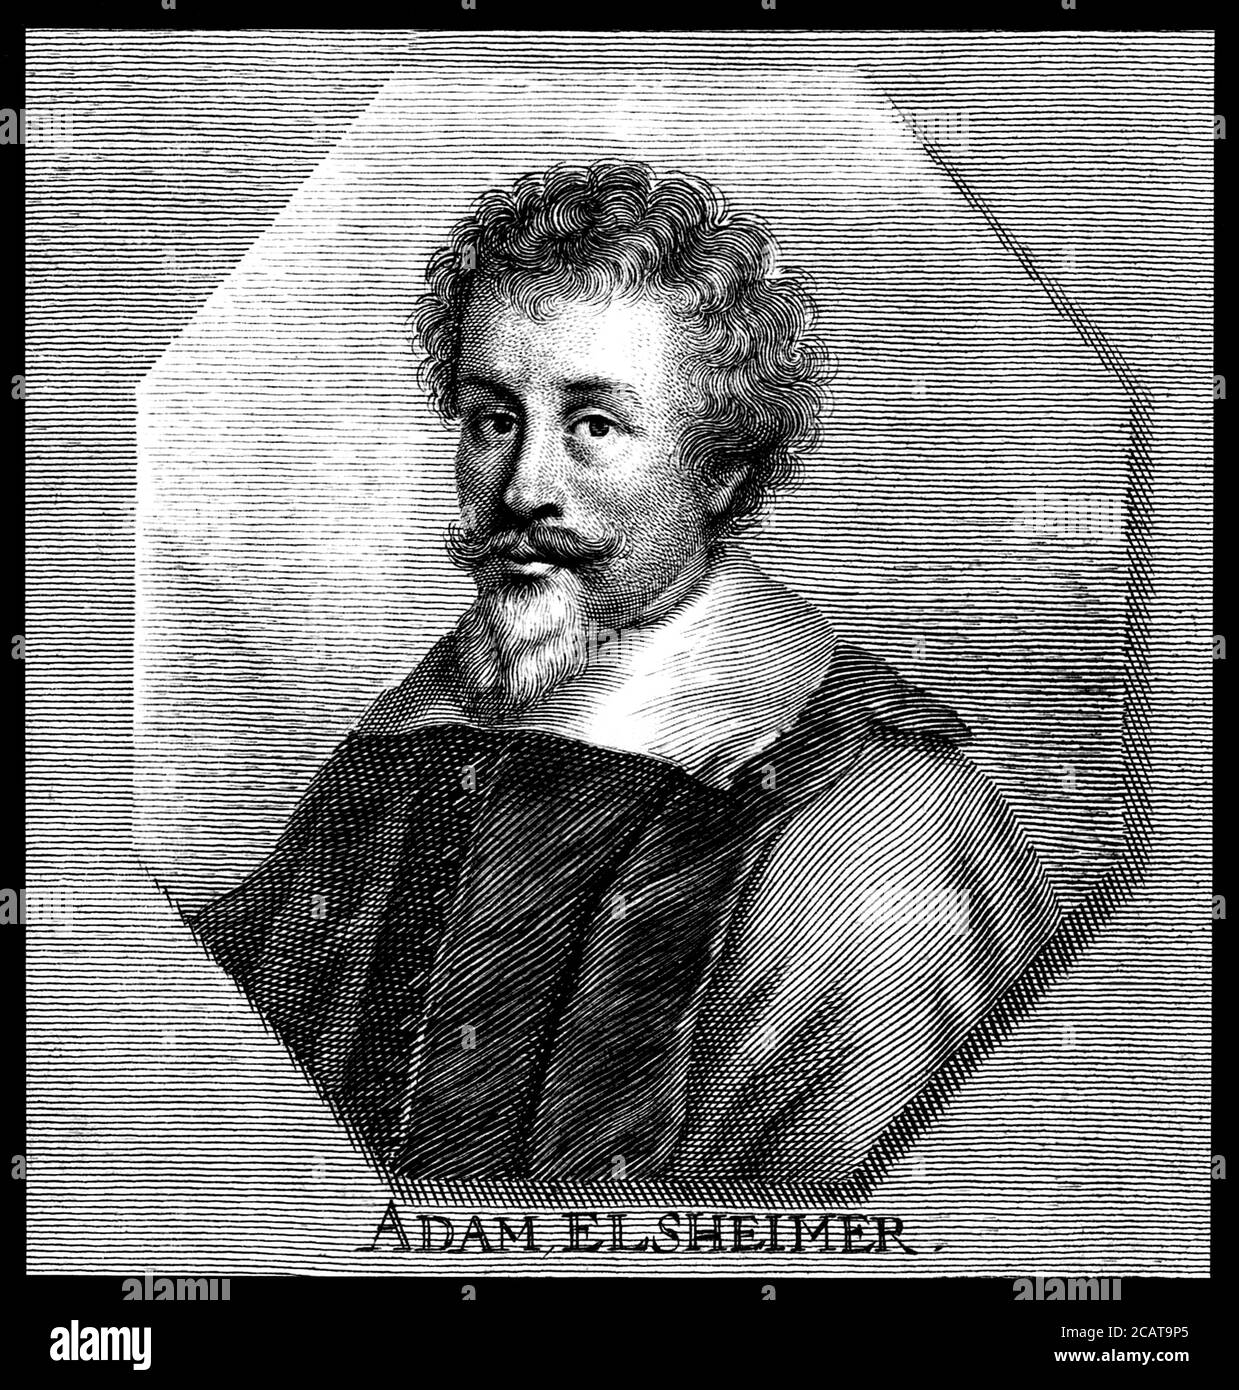 1600 C, GERMANIA : il pittore tedesco ADAM ELSHEIMER ( 1578 - 1610 ). Incisione di artista sconosciuto , pubblicatasi nel 1700 . - RITRATTO - ritratto - ARTE - ARTI VISIVE - PITTORE - incisione - illustrazione - STORIA - FOTO STORICHE - barba - barba -- ARCHIVIO GBB Foto Stock